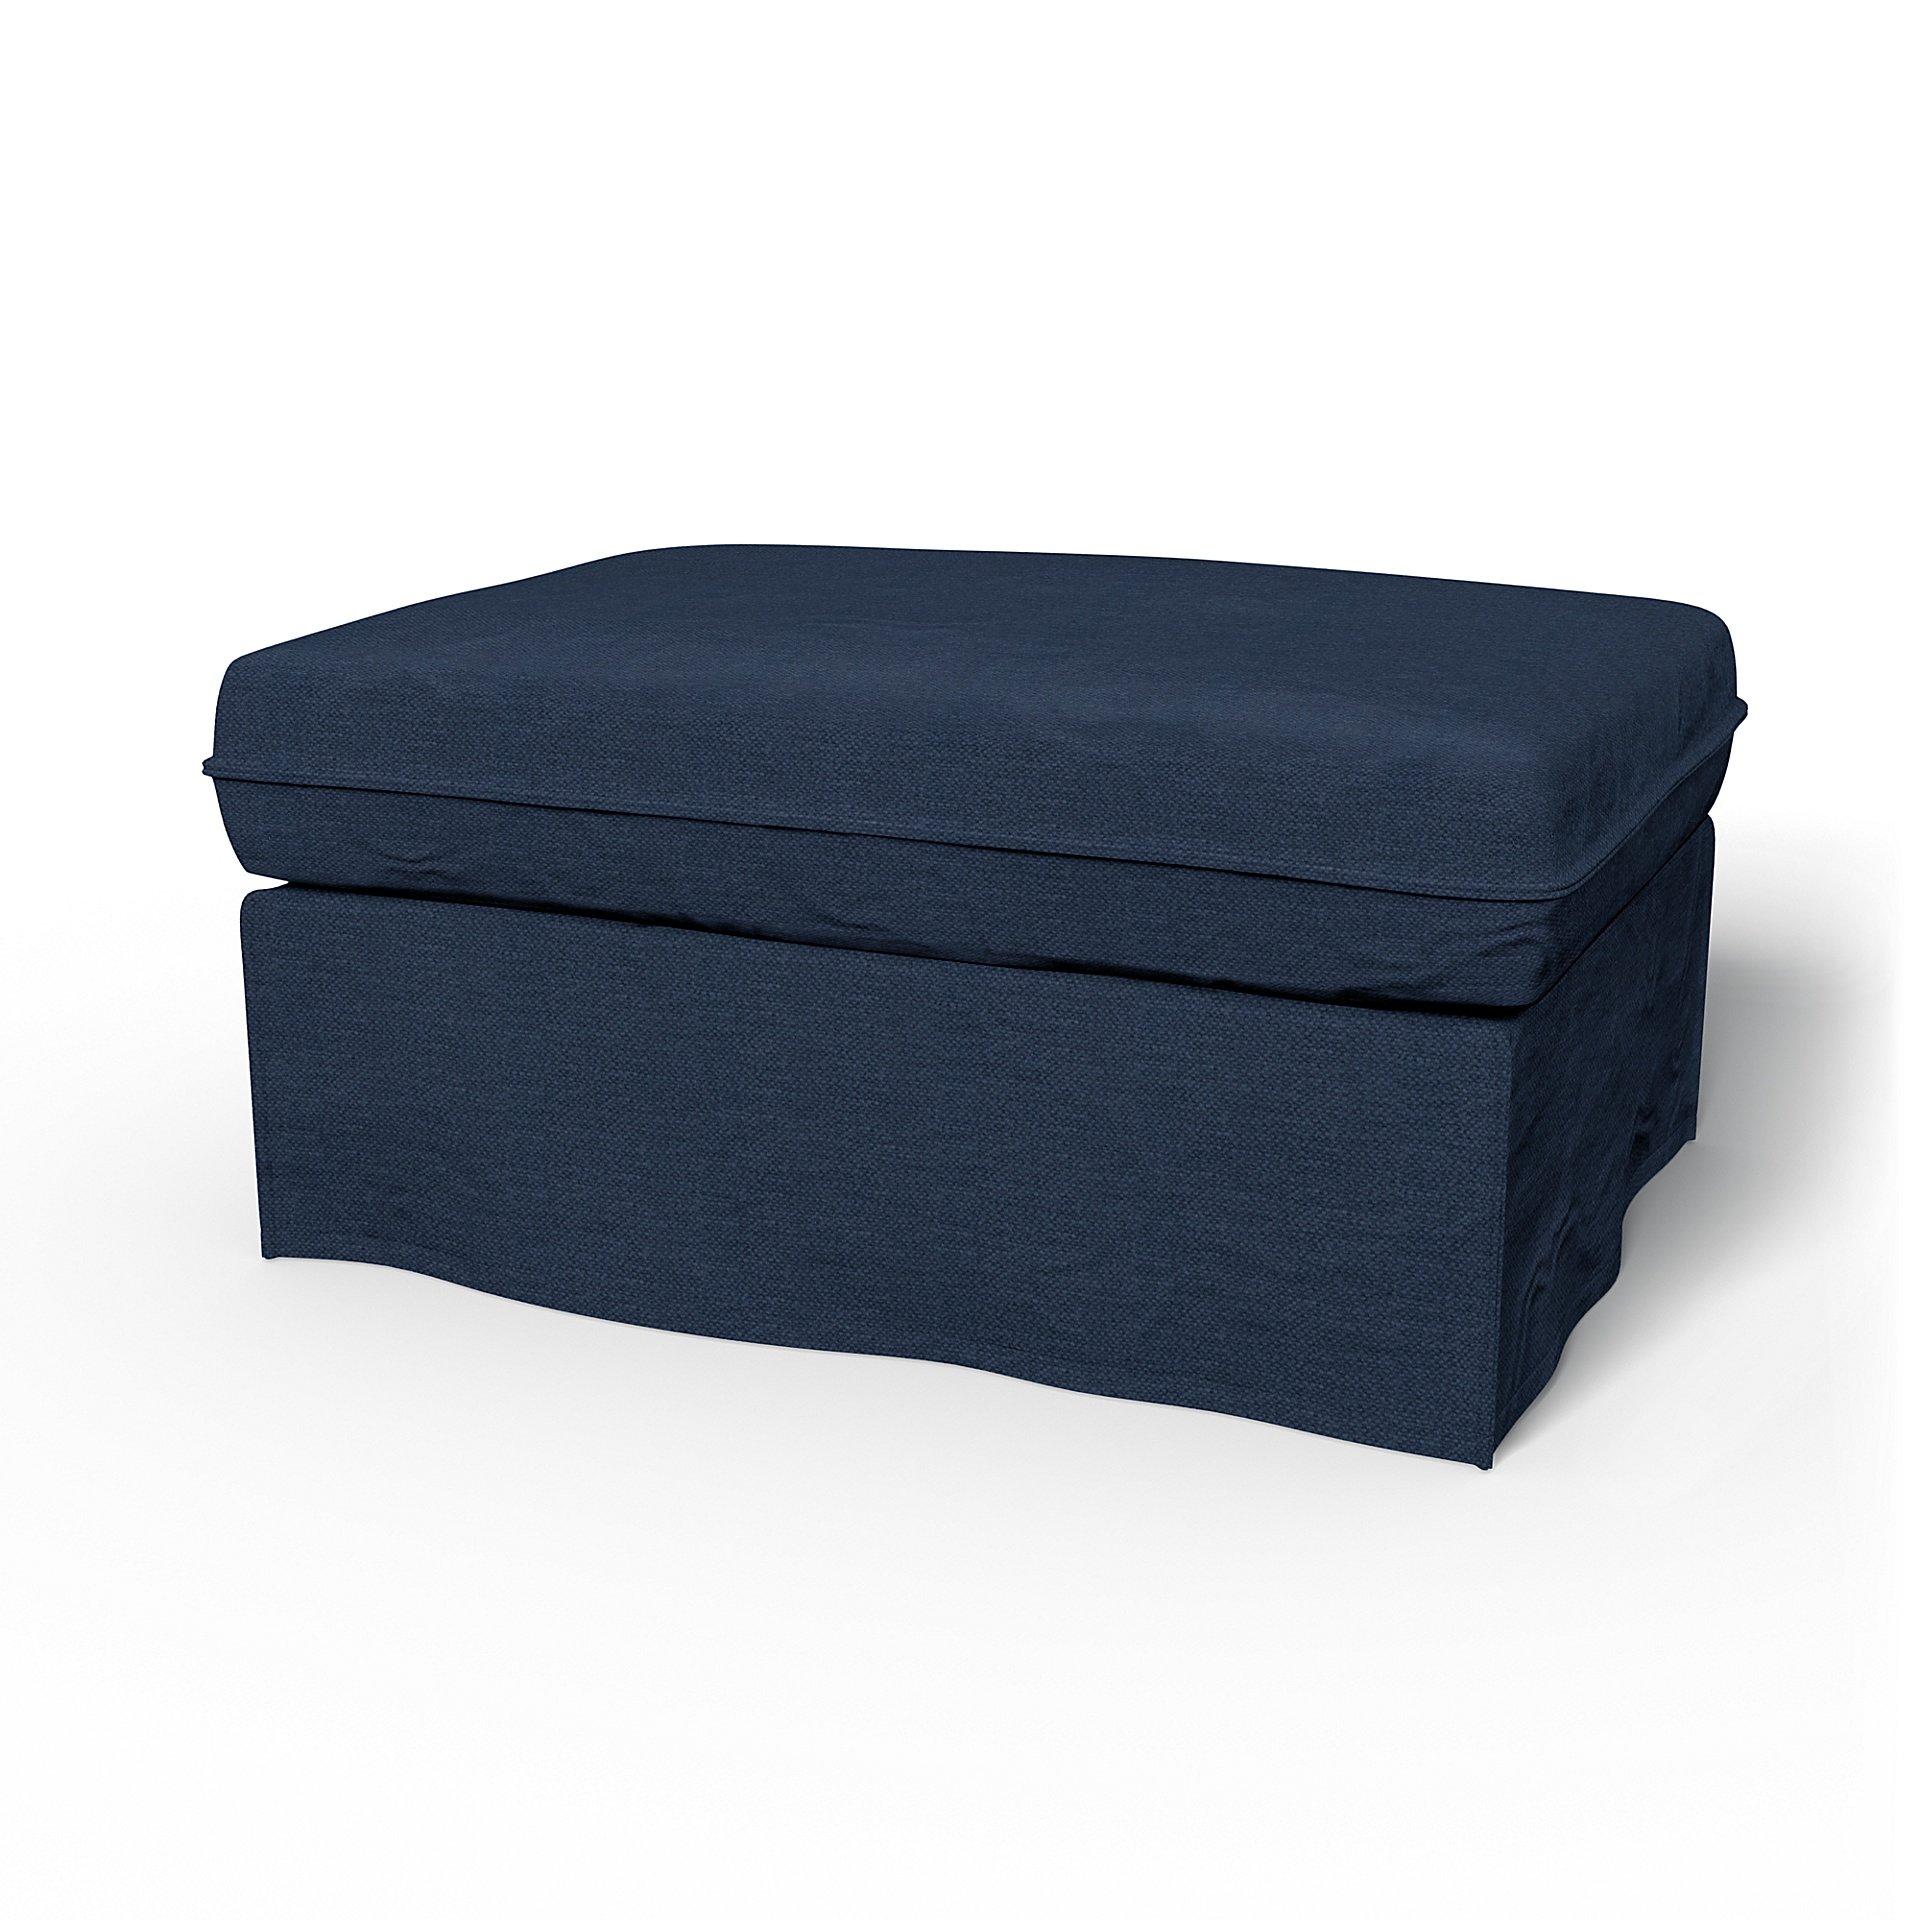 IKEA - Karlstad Footstool Cover, Navy Blue, Linen - Bemz